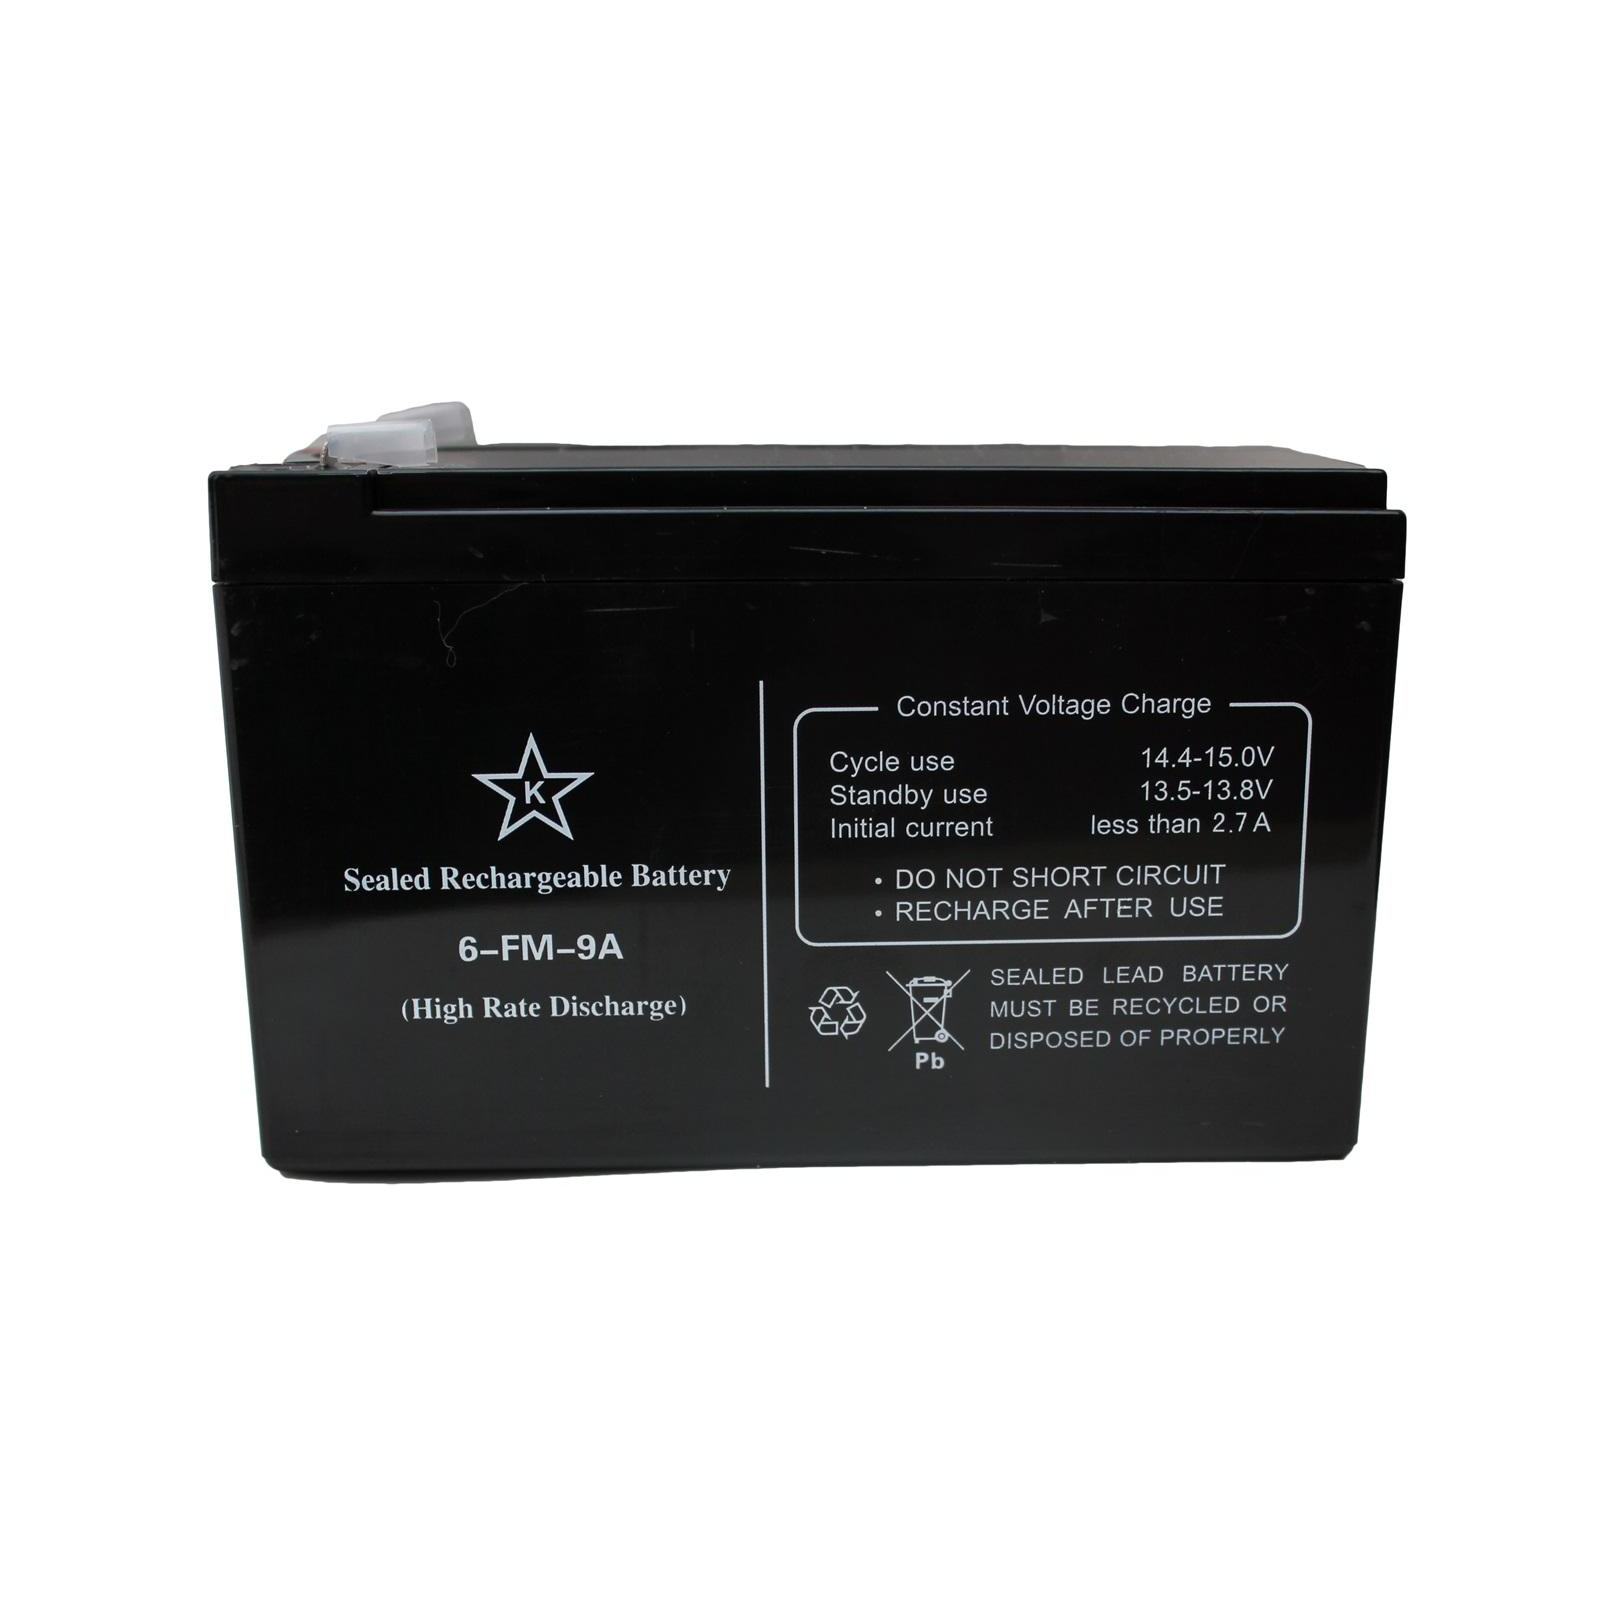 Батарея к ИБП Kstar 12В 9 Ач (6-FM-9A) (6-FM-9A)